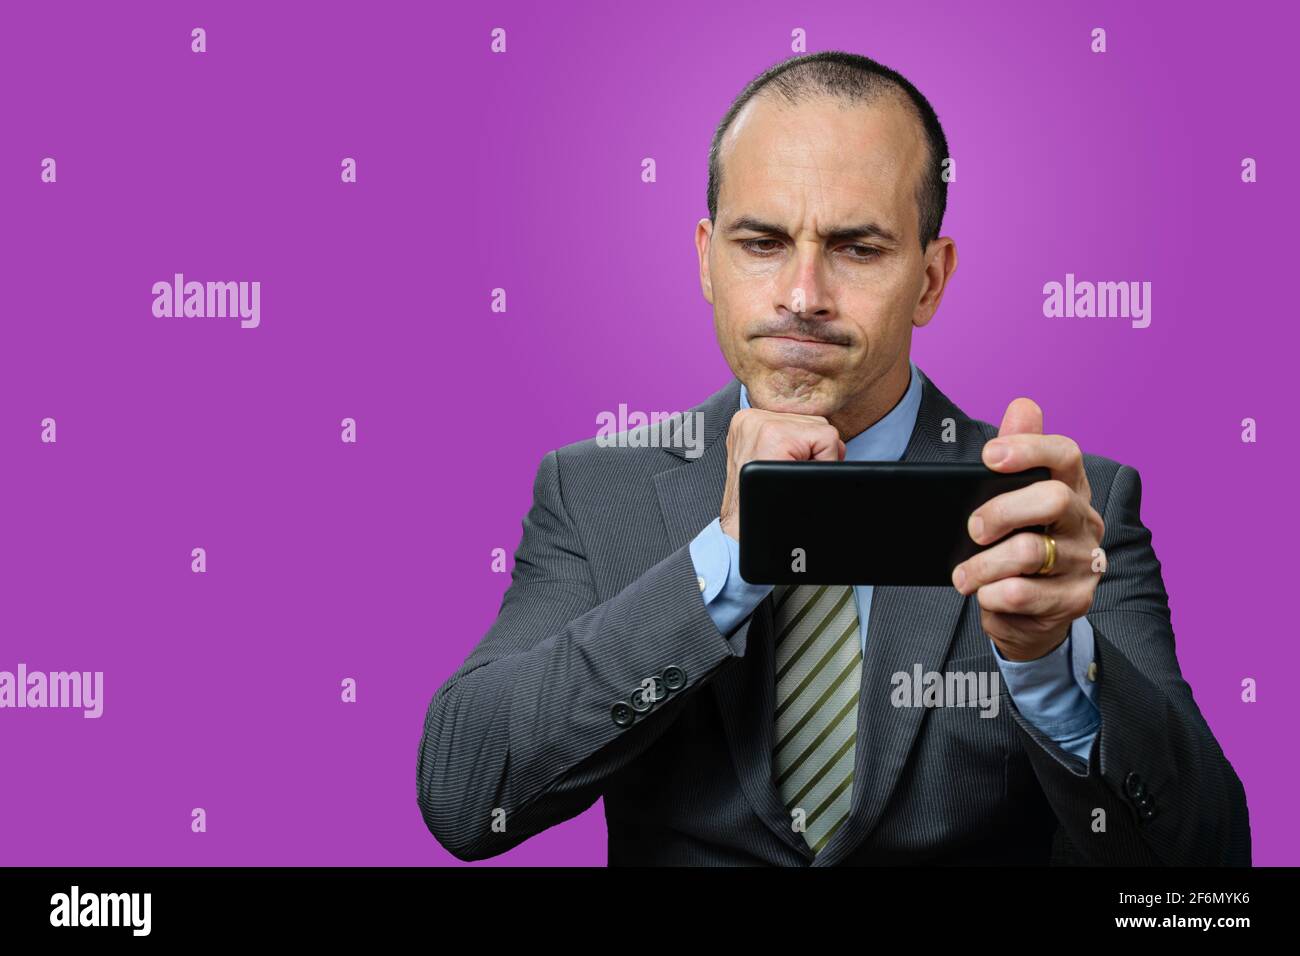 Uomo maturo con vestito e cravatta, guardando il suo smartphone, deluso e con il pugno sotto il mento. Sfondo viola. Foto Stock